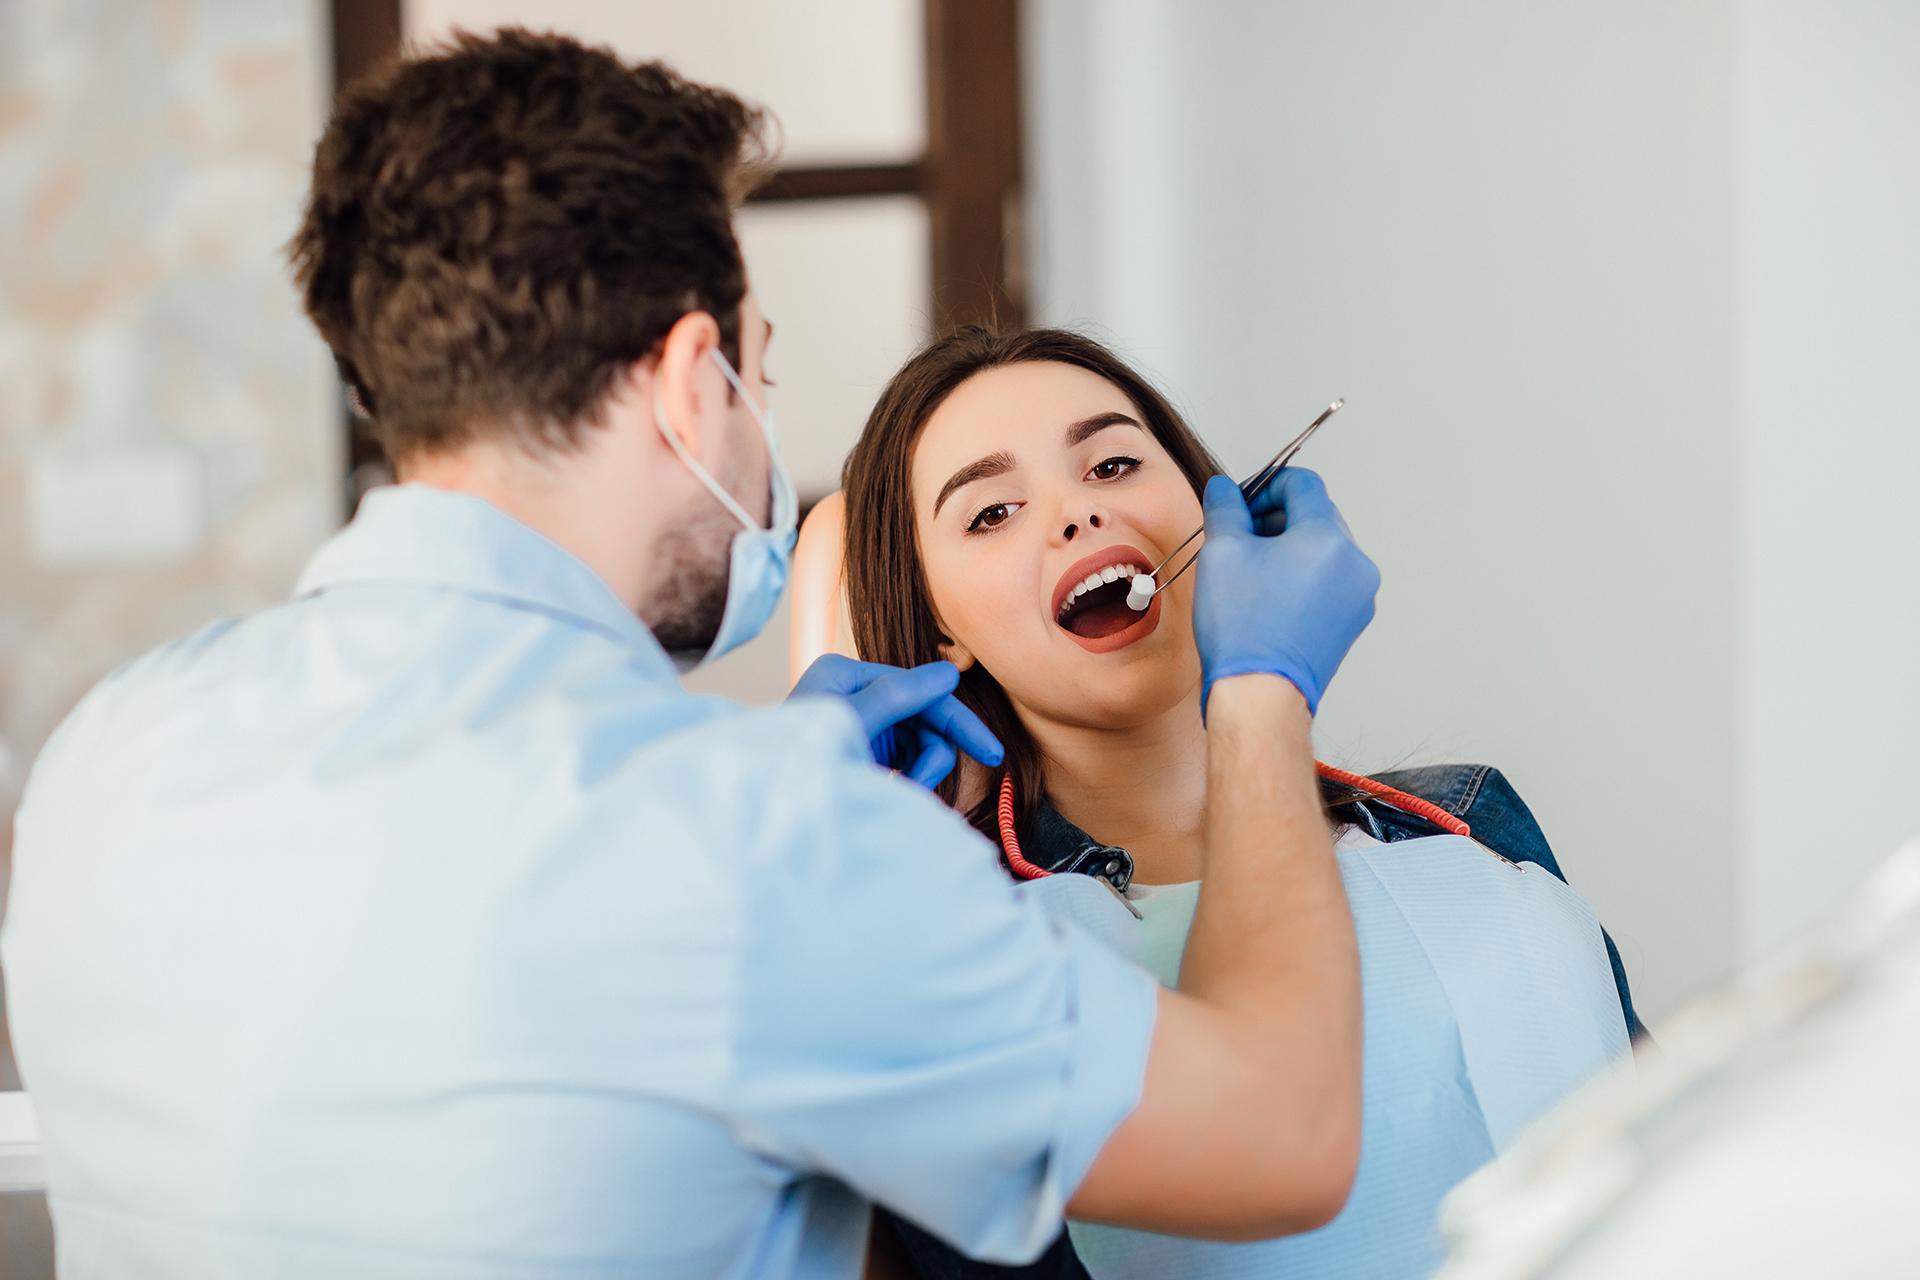 दंत आरोग्य विमा: त्यात गुंतवणूक करणे योग्य आहे का?